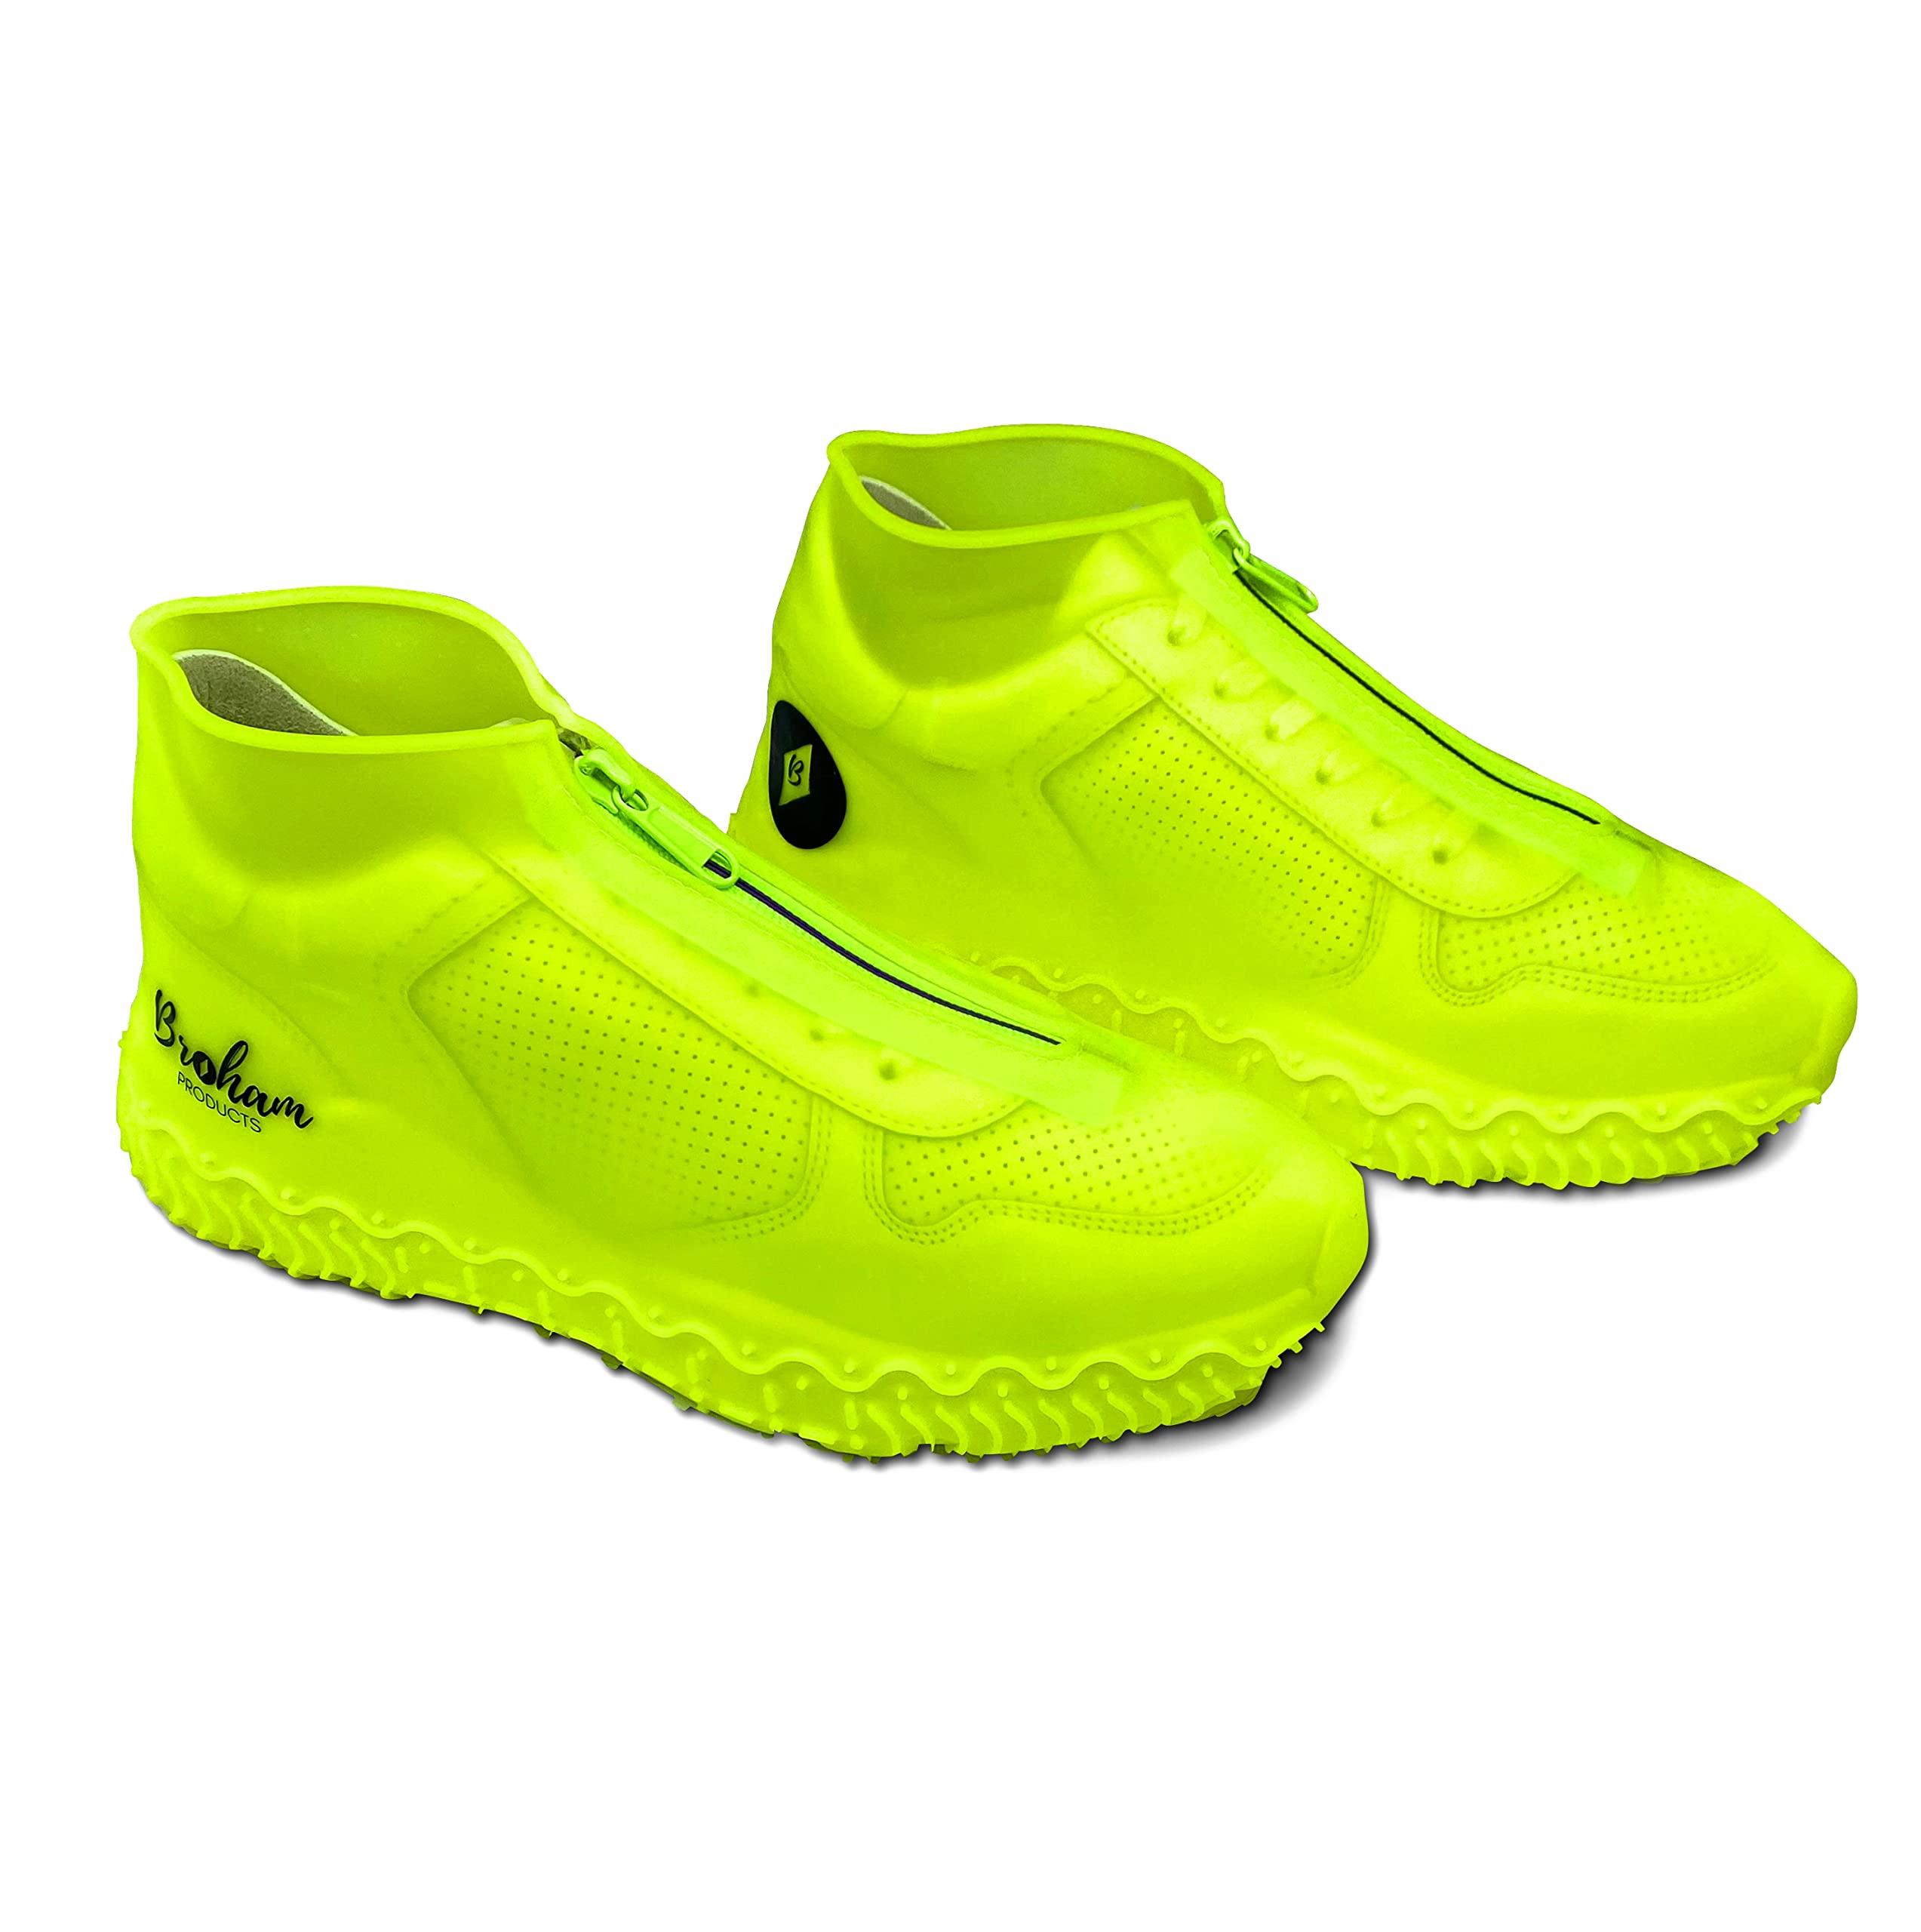 Broham Regenschutz Schuhe - wasserdichte Silikon Überschuhe für Damen & Herren in stylischen Farben | Regen Schuhüberzieher - Fahrrad Regenbekleidung wasserdicht | Größe: M (Mint-Blau)